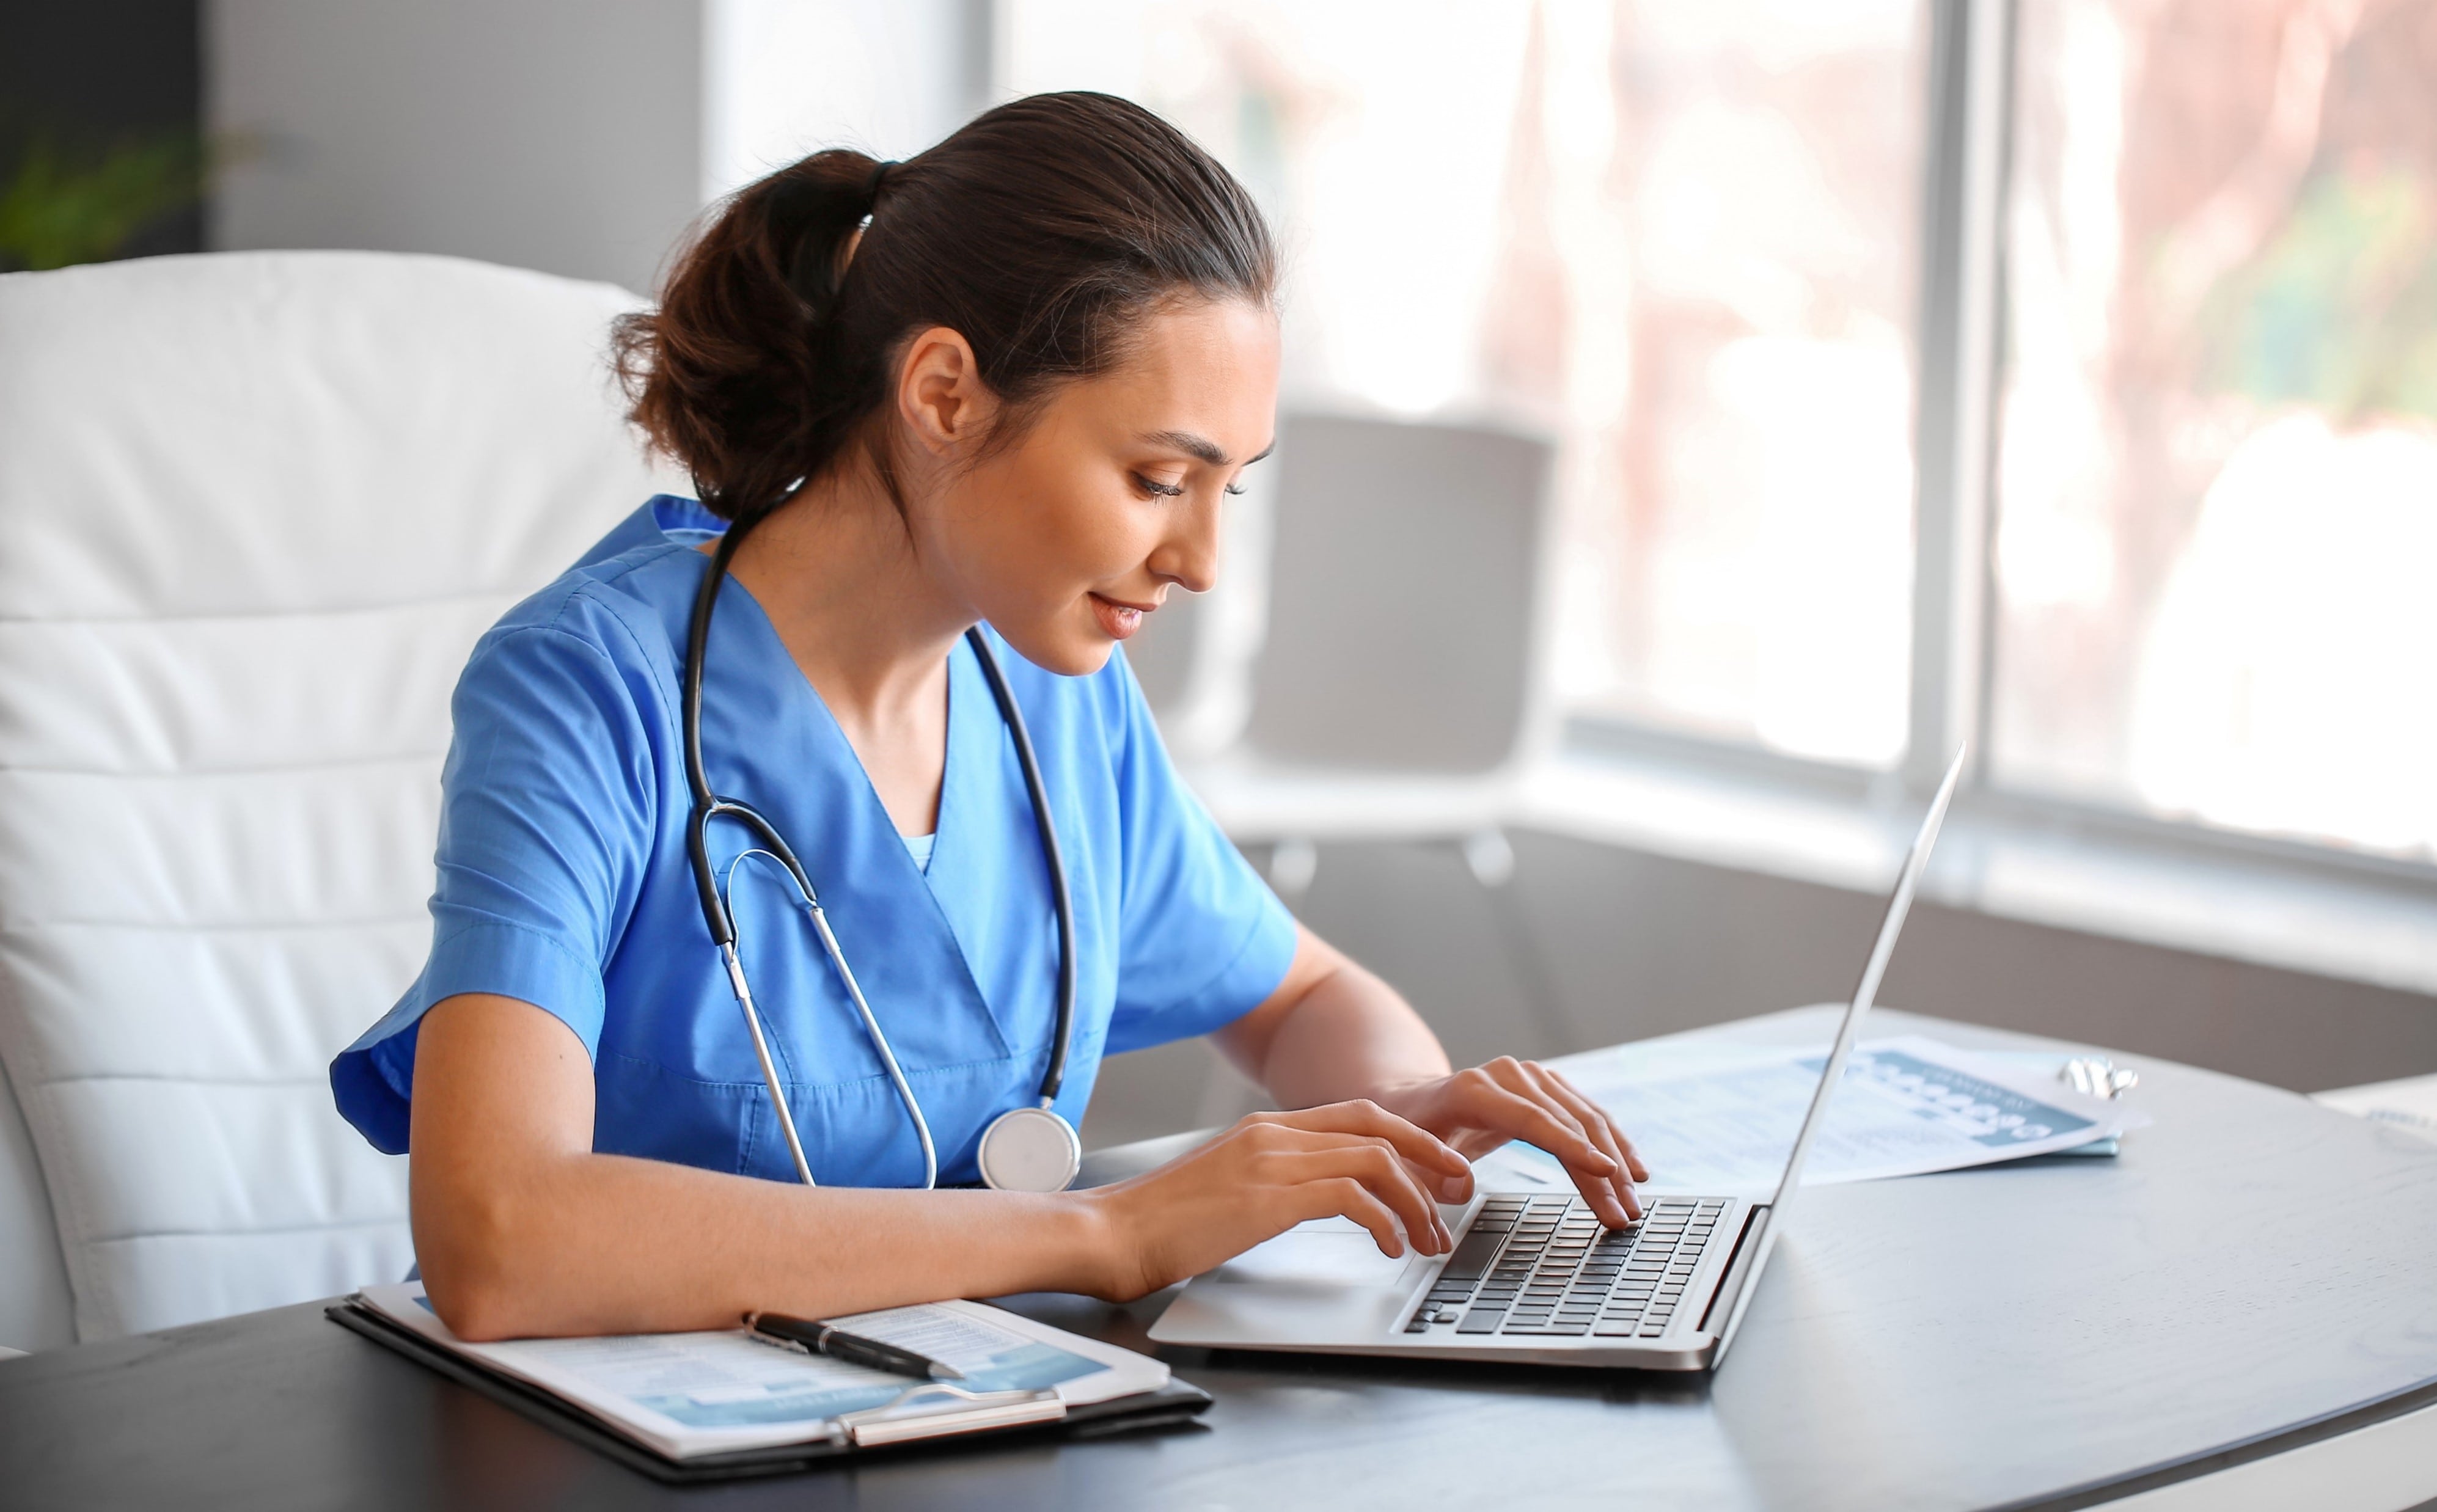 Nurse online learning on laptop